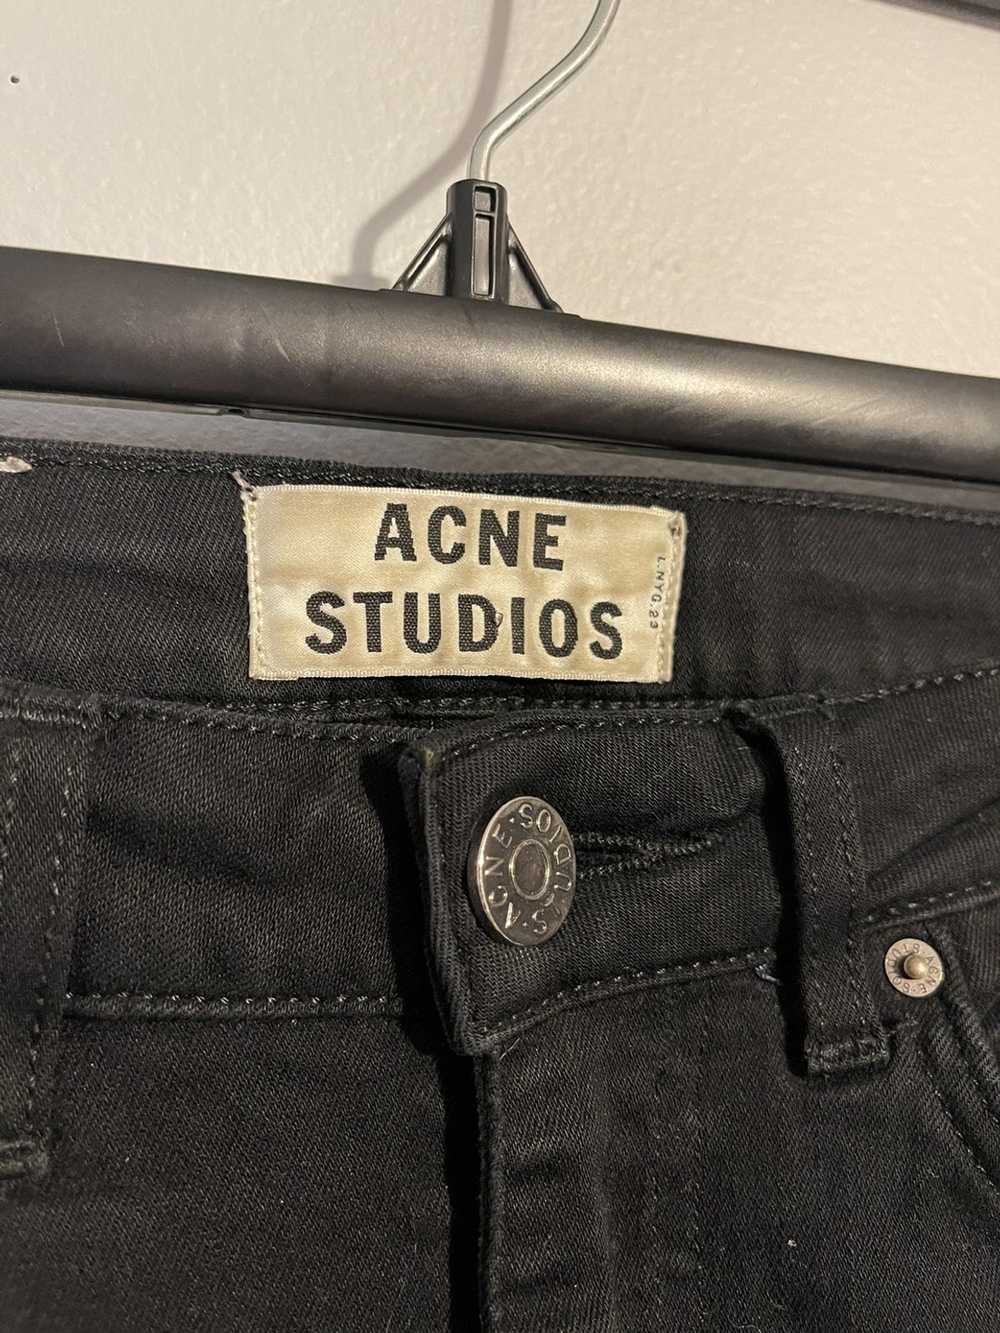 Acne Studios Acne Studios Black Denim Jeans - image 3